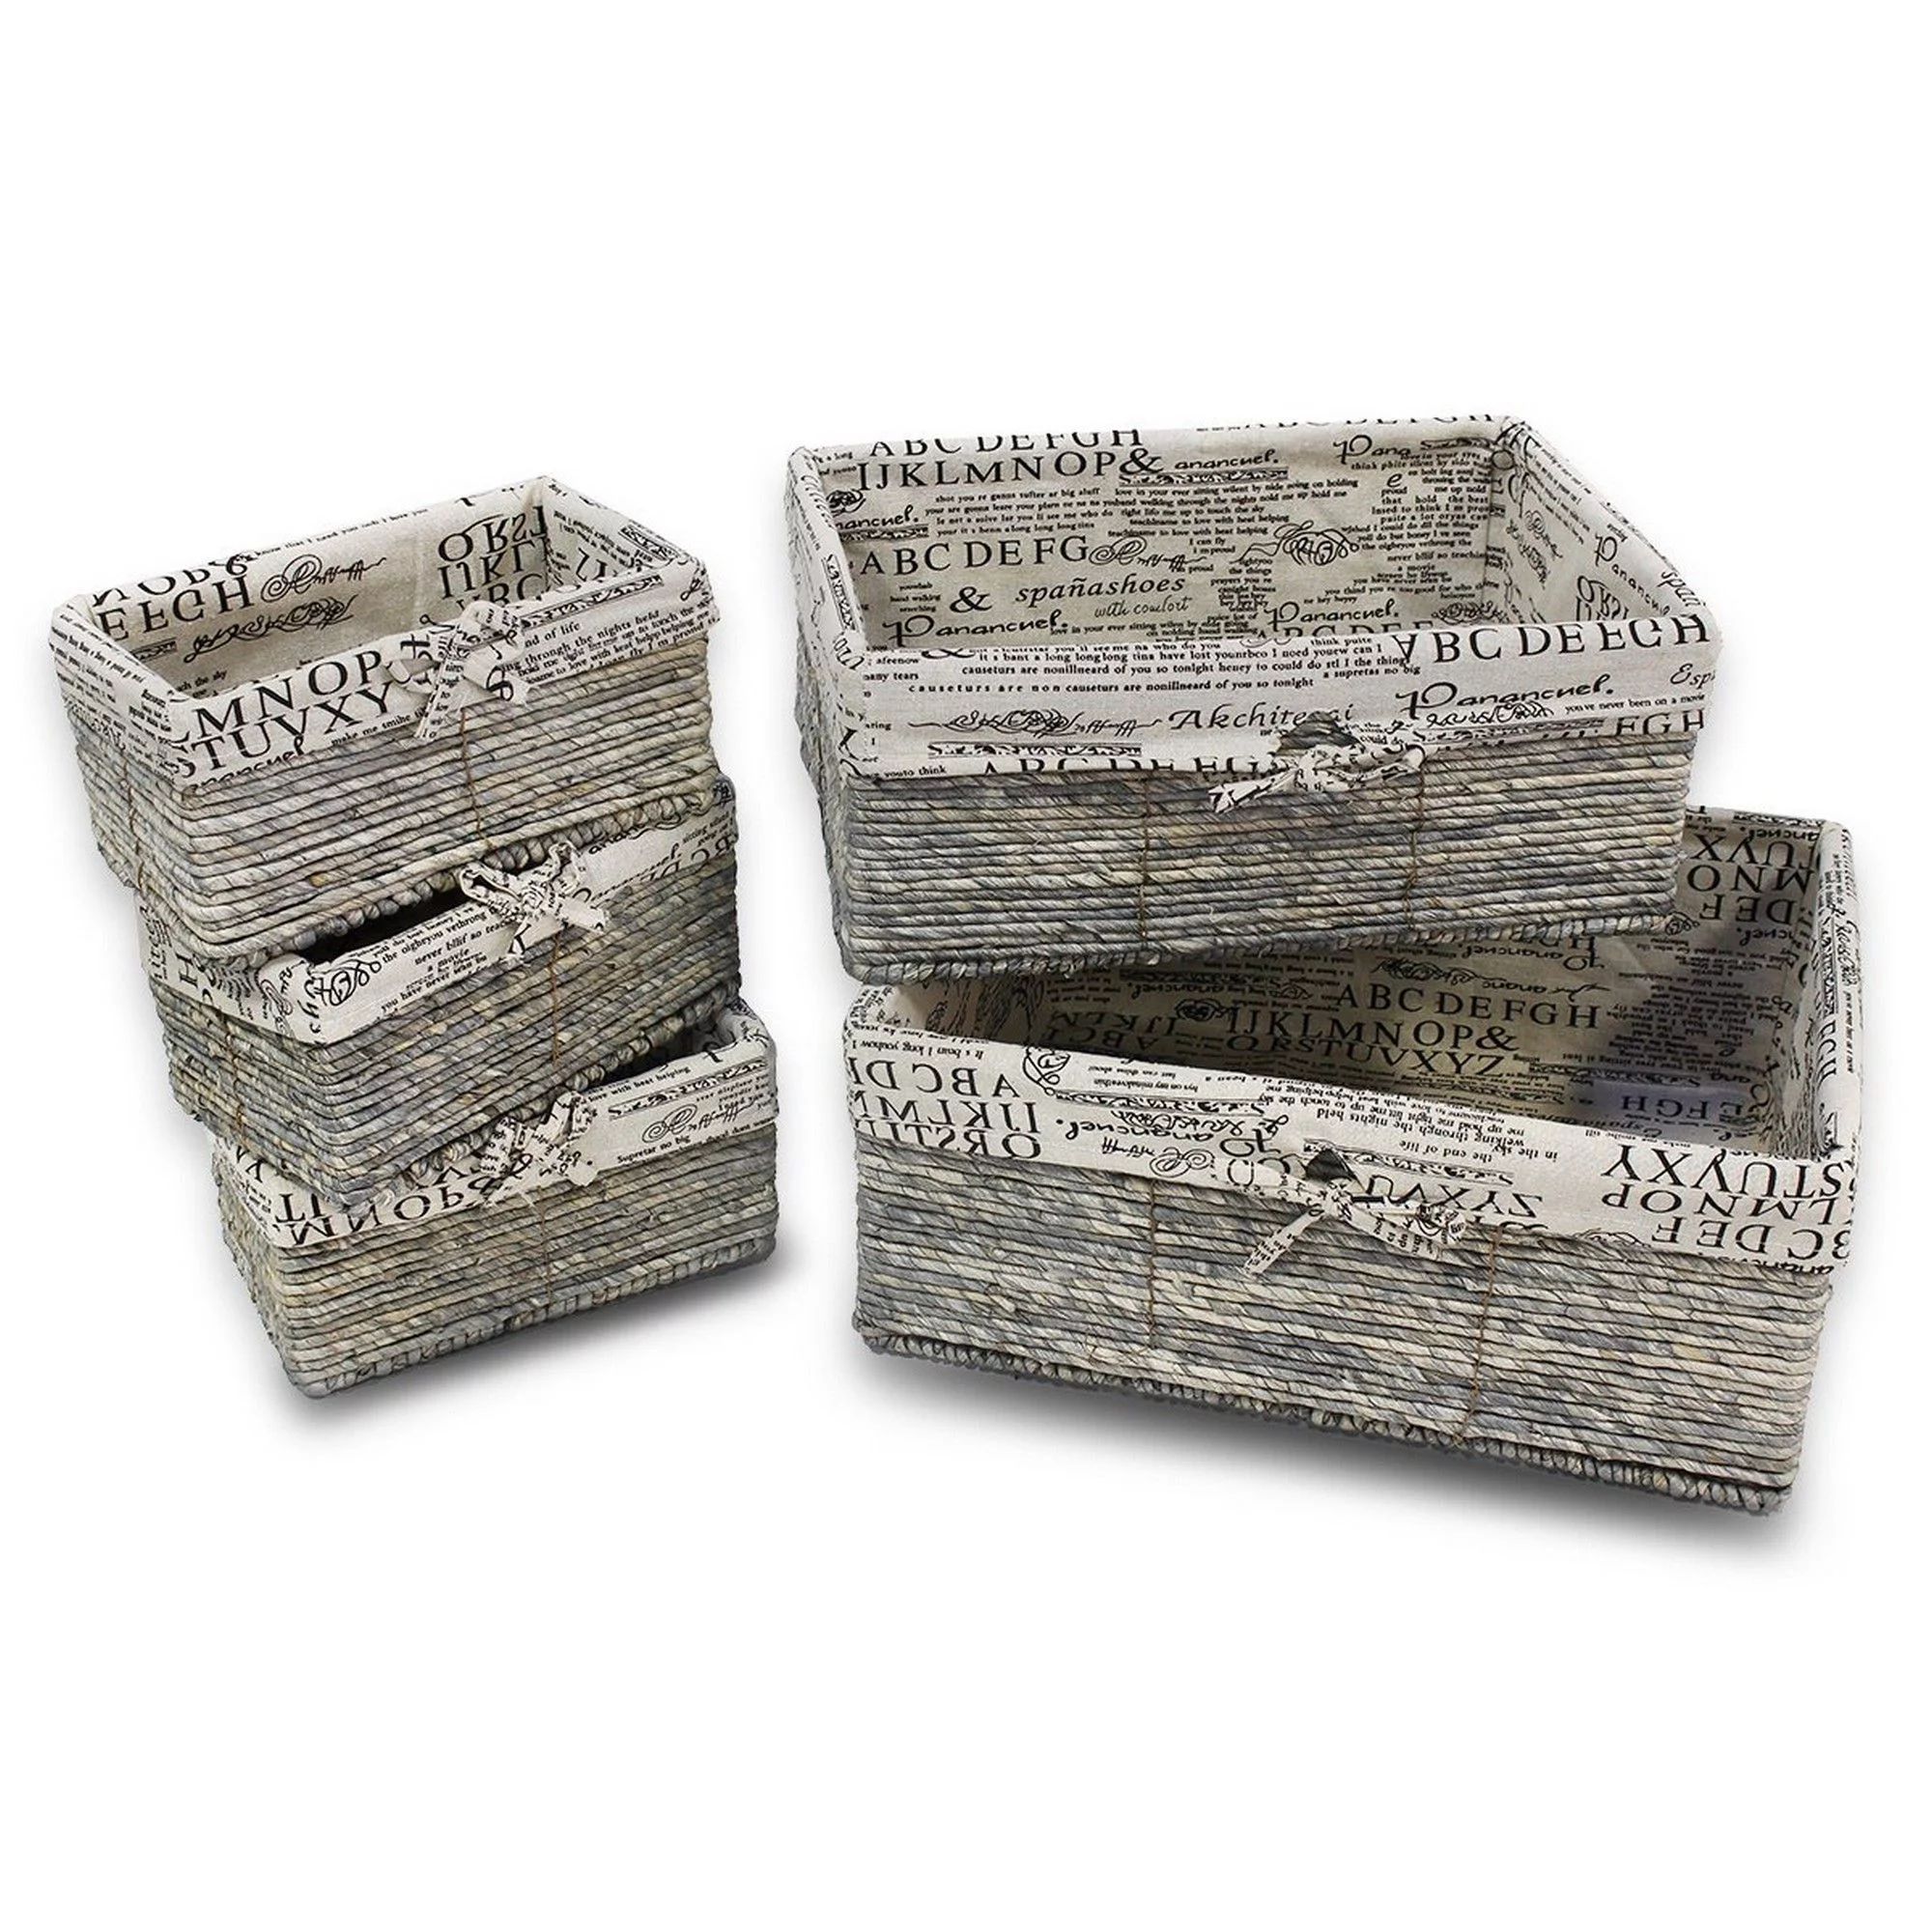 Nesting Storage Baskets - 5-Piece Wicker Decorative Baskets, Nesting Cube Organizers Box Set for ... | Walmart (US)